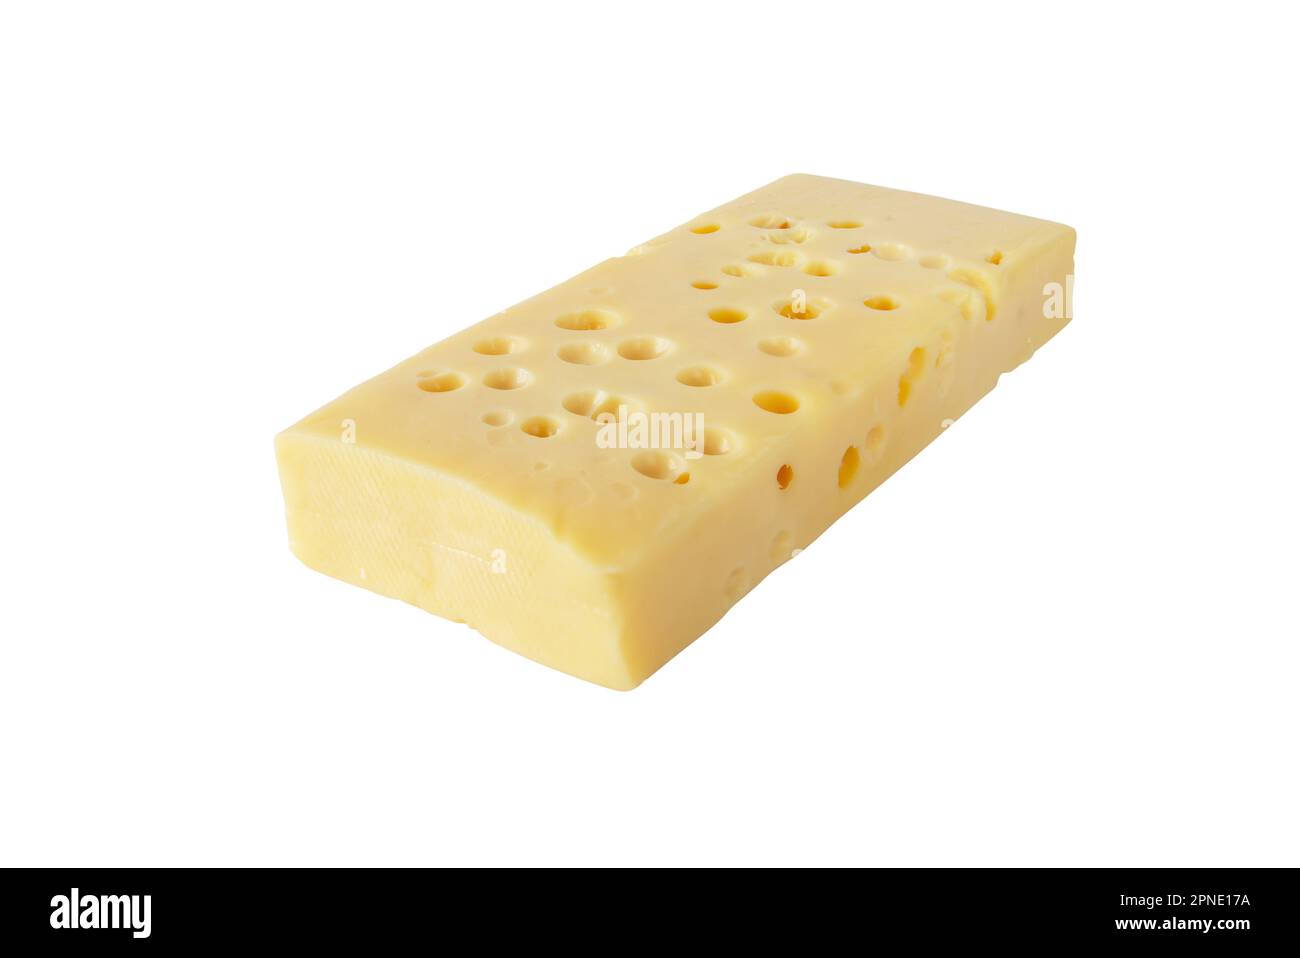 Emmentaler Käse, Schweizer Käse, isoliert auf Weiß. Gelbes Emmentalerstück mit Augen oder runden Löchern. Stockfoto